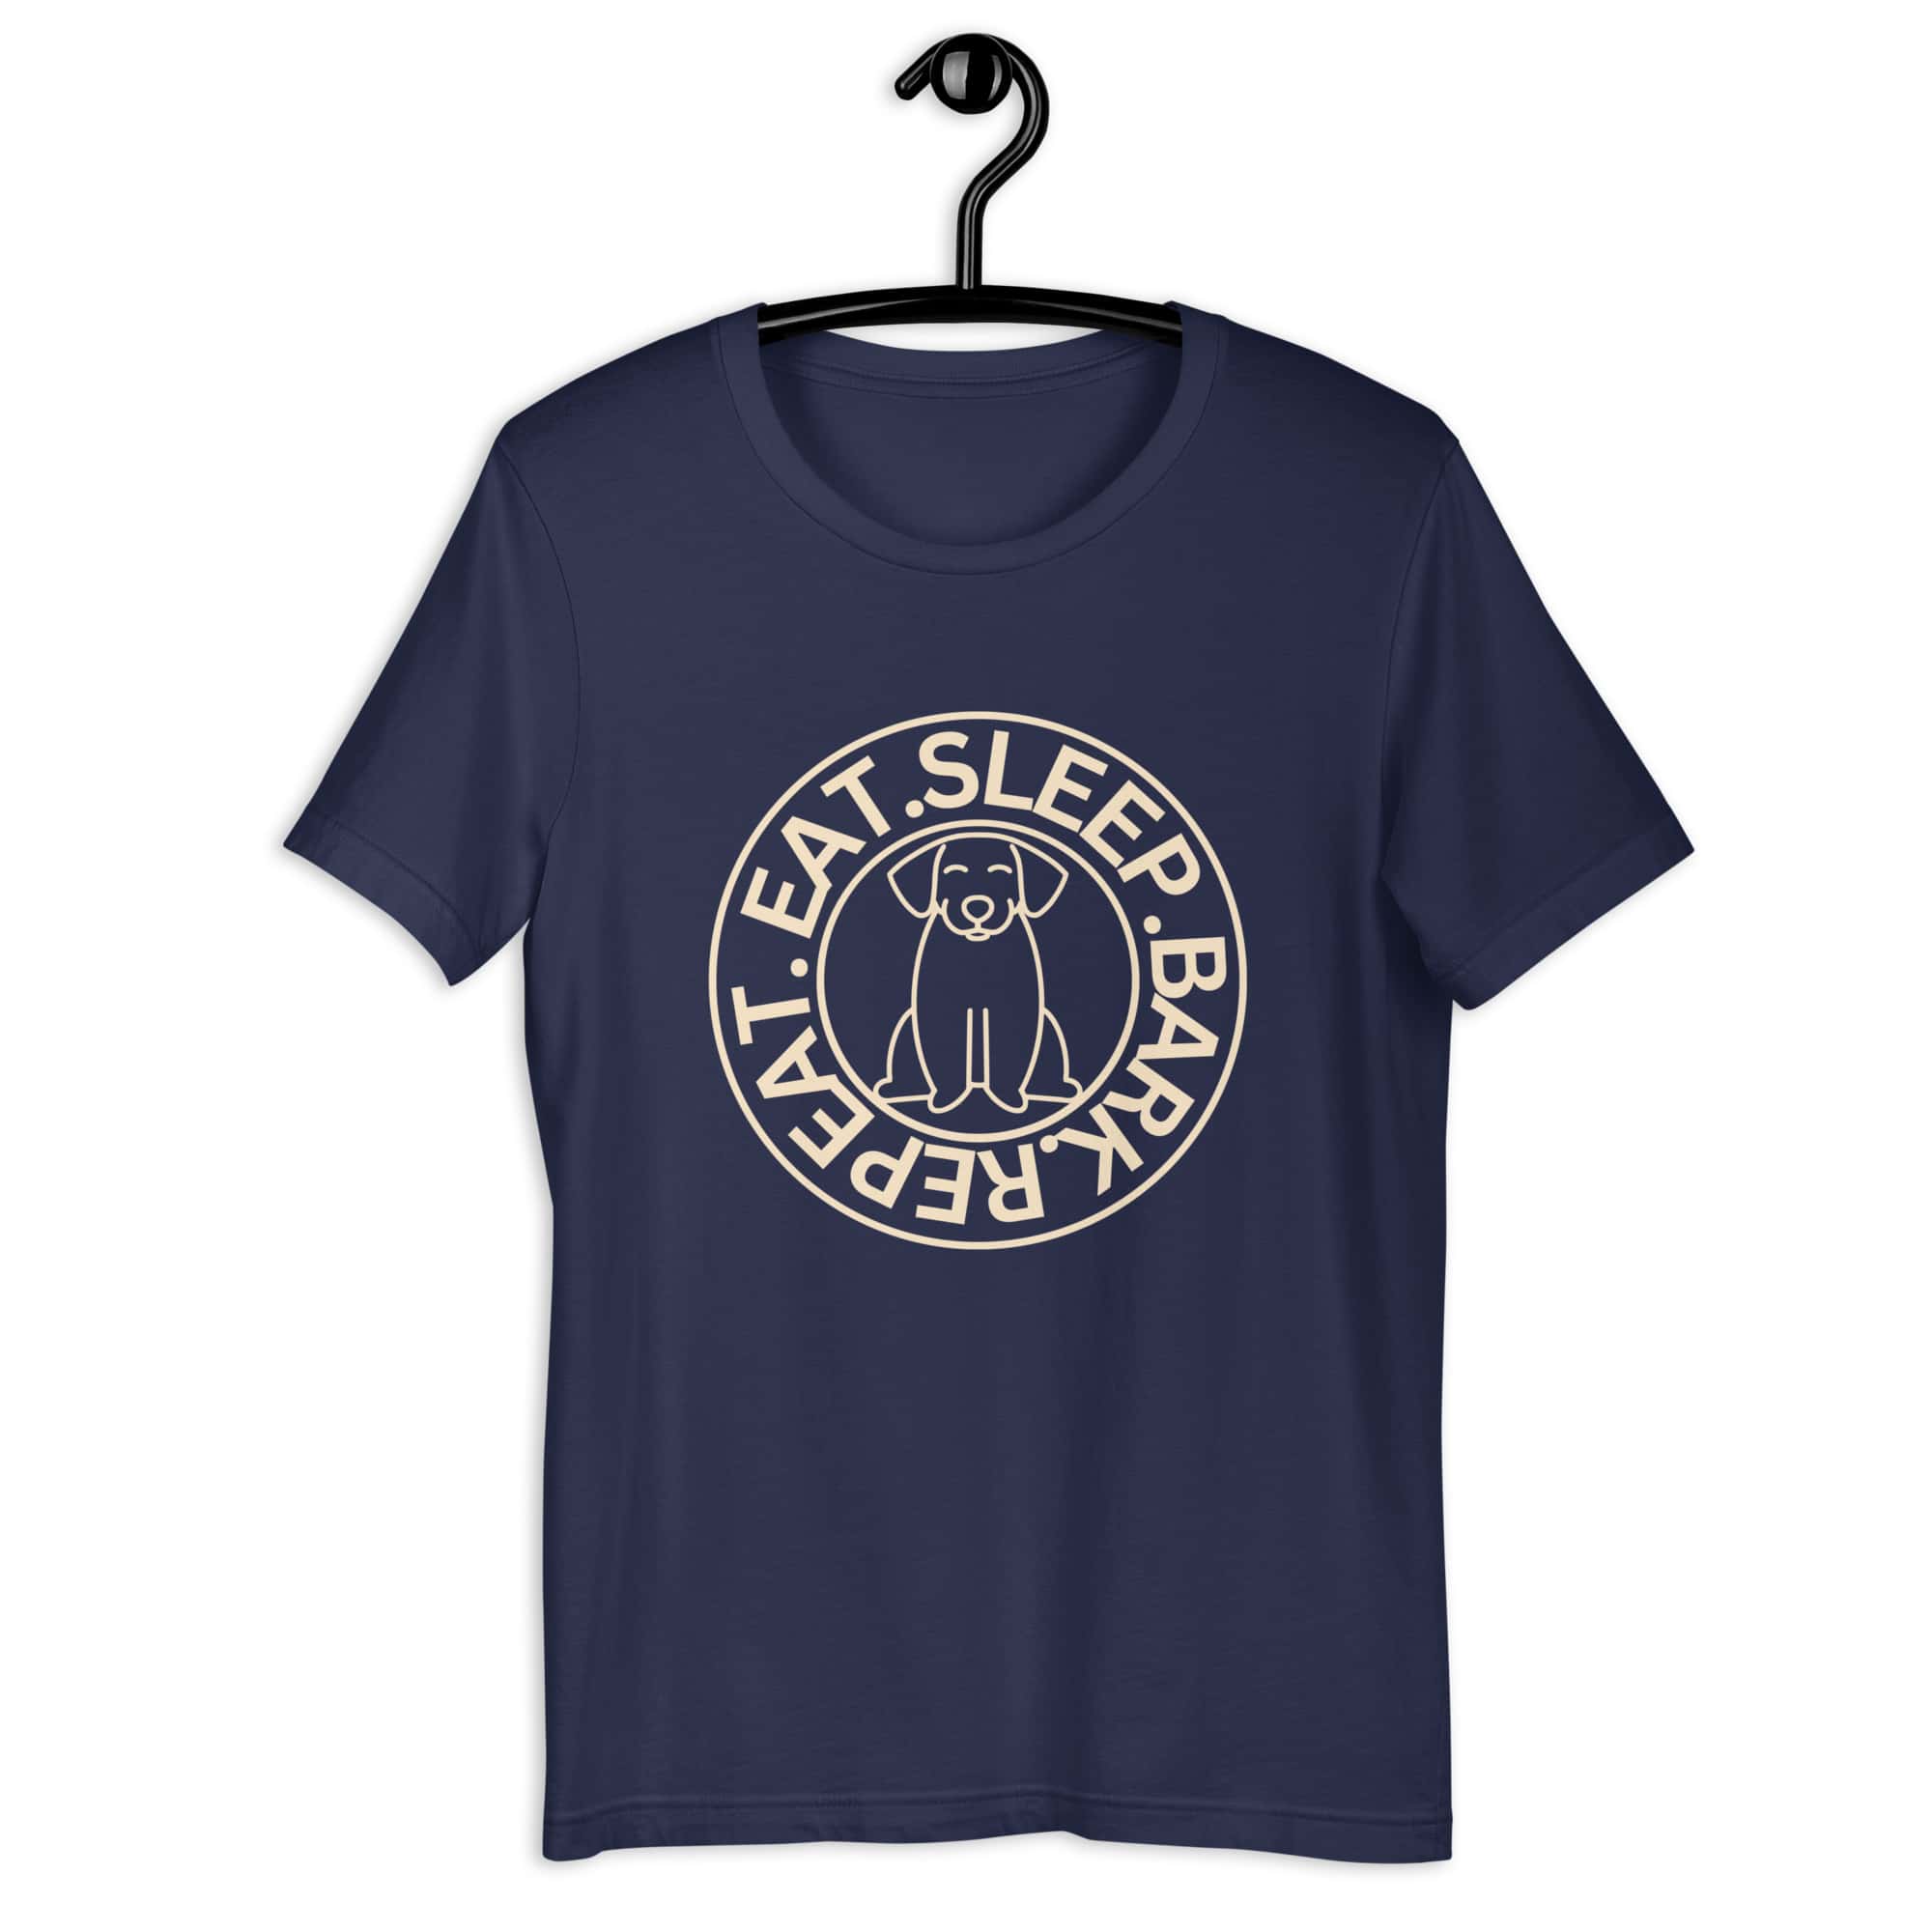 Eat Sleep Bark Repeat Ransylvanian Hound (Erdélyi Kopó) Unisex T-Shirt. Navy